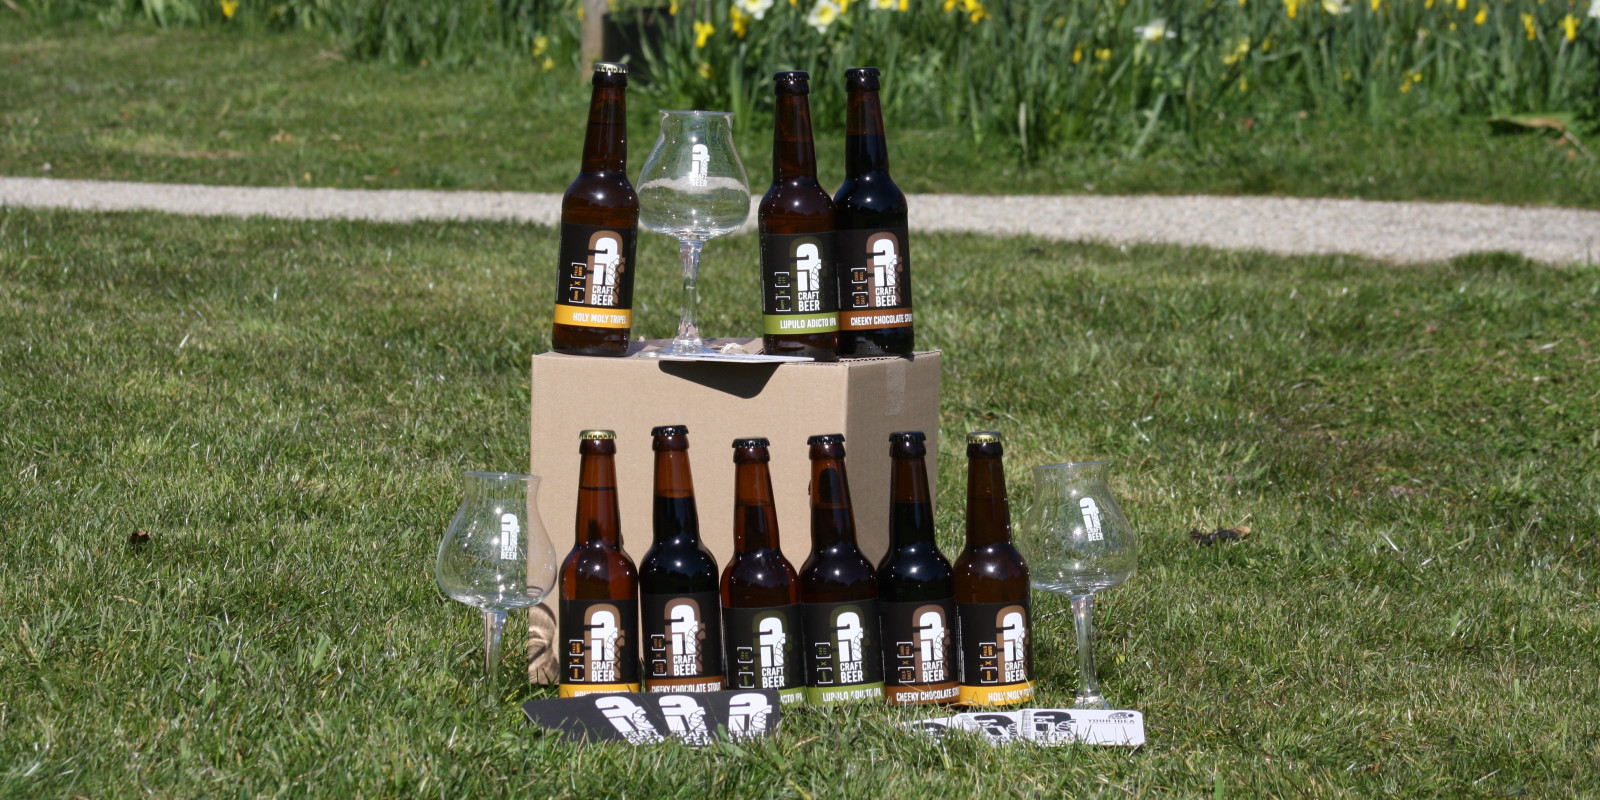 Bestel je zelf samengestelde IF Craft Beer box